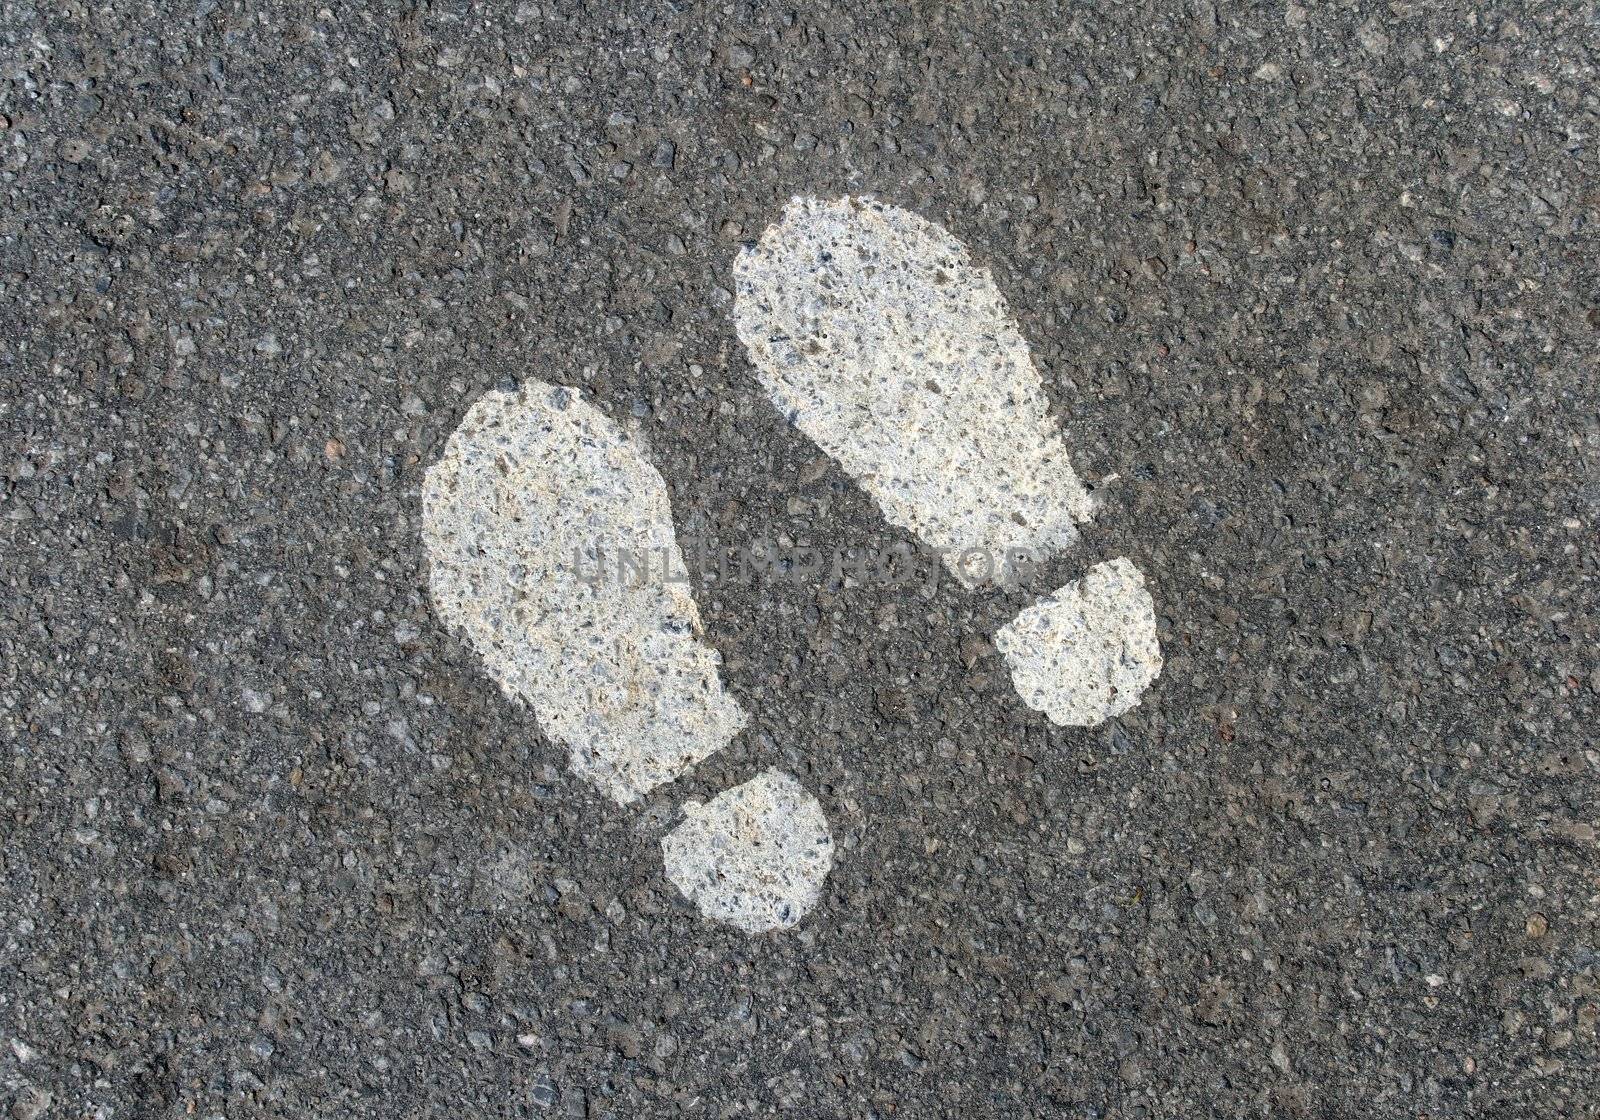 Painted footprints on asphalt by anikasalsera